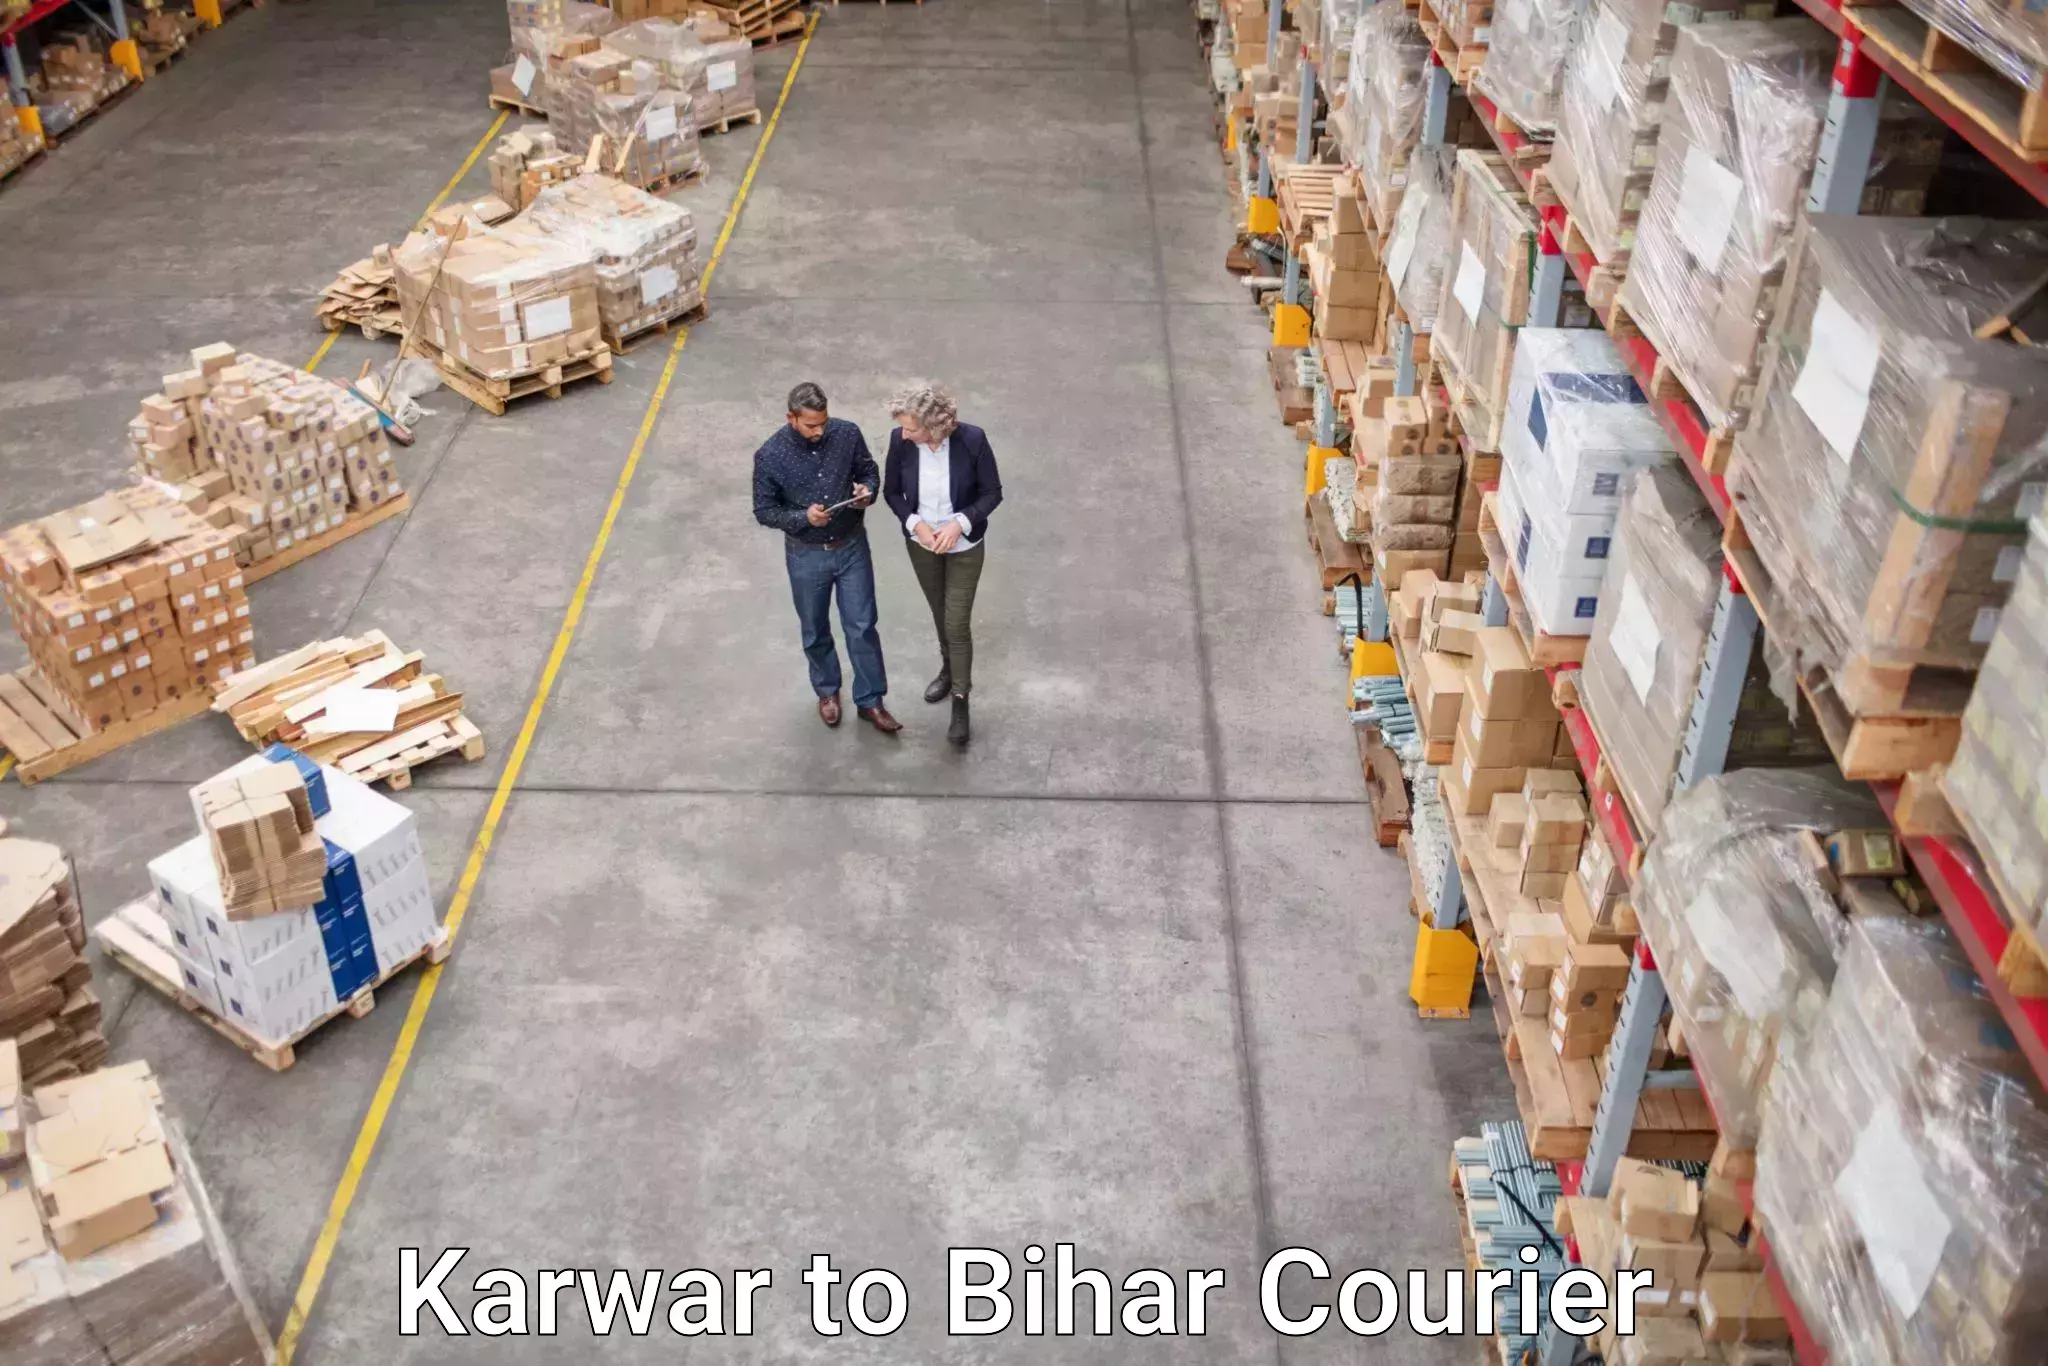 Premium courier services in Karwar to Tribeniganj